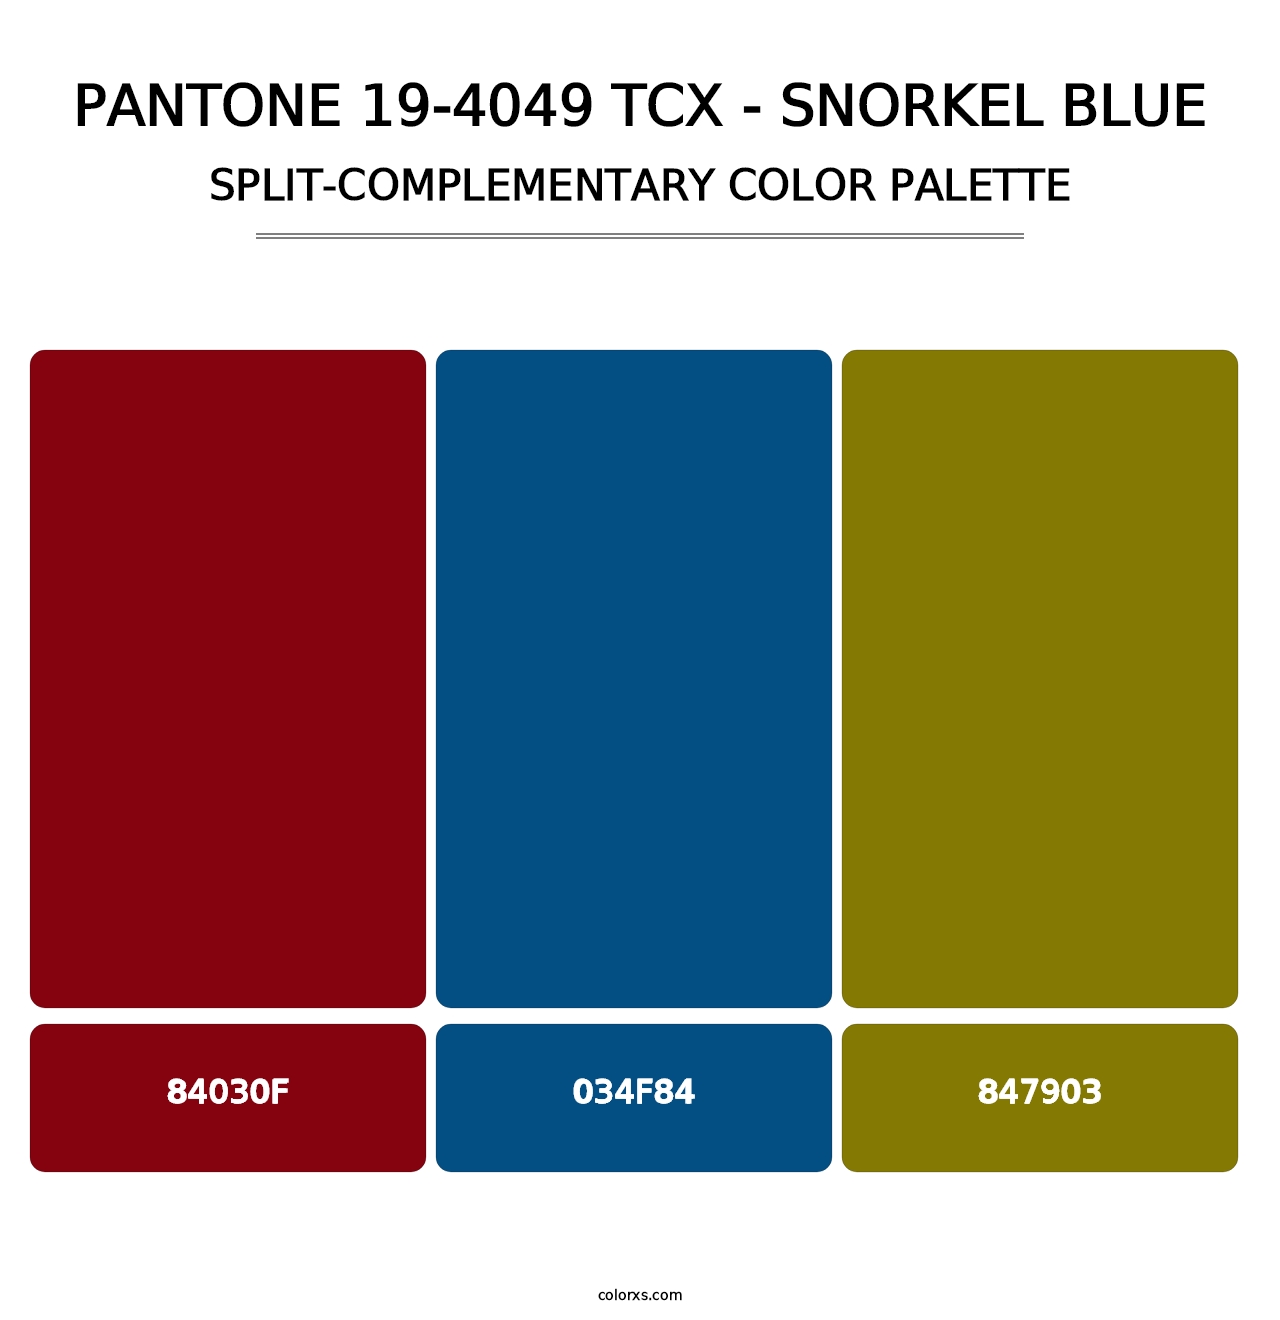 PANTONE 19-4049 TCX - Snorkel Blue - Split-Complementary Color Palette